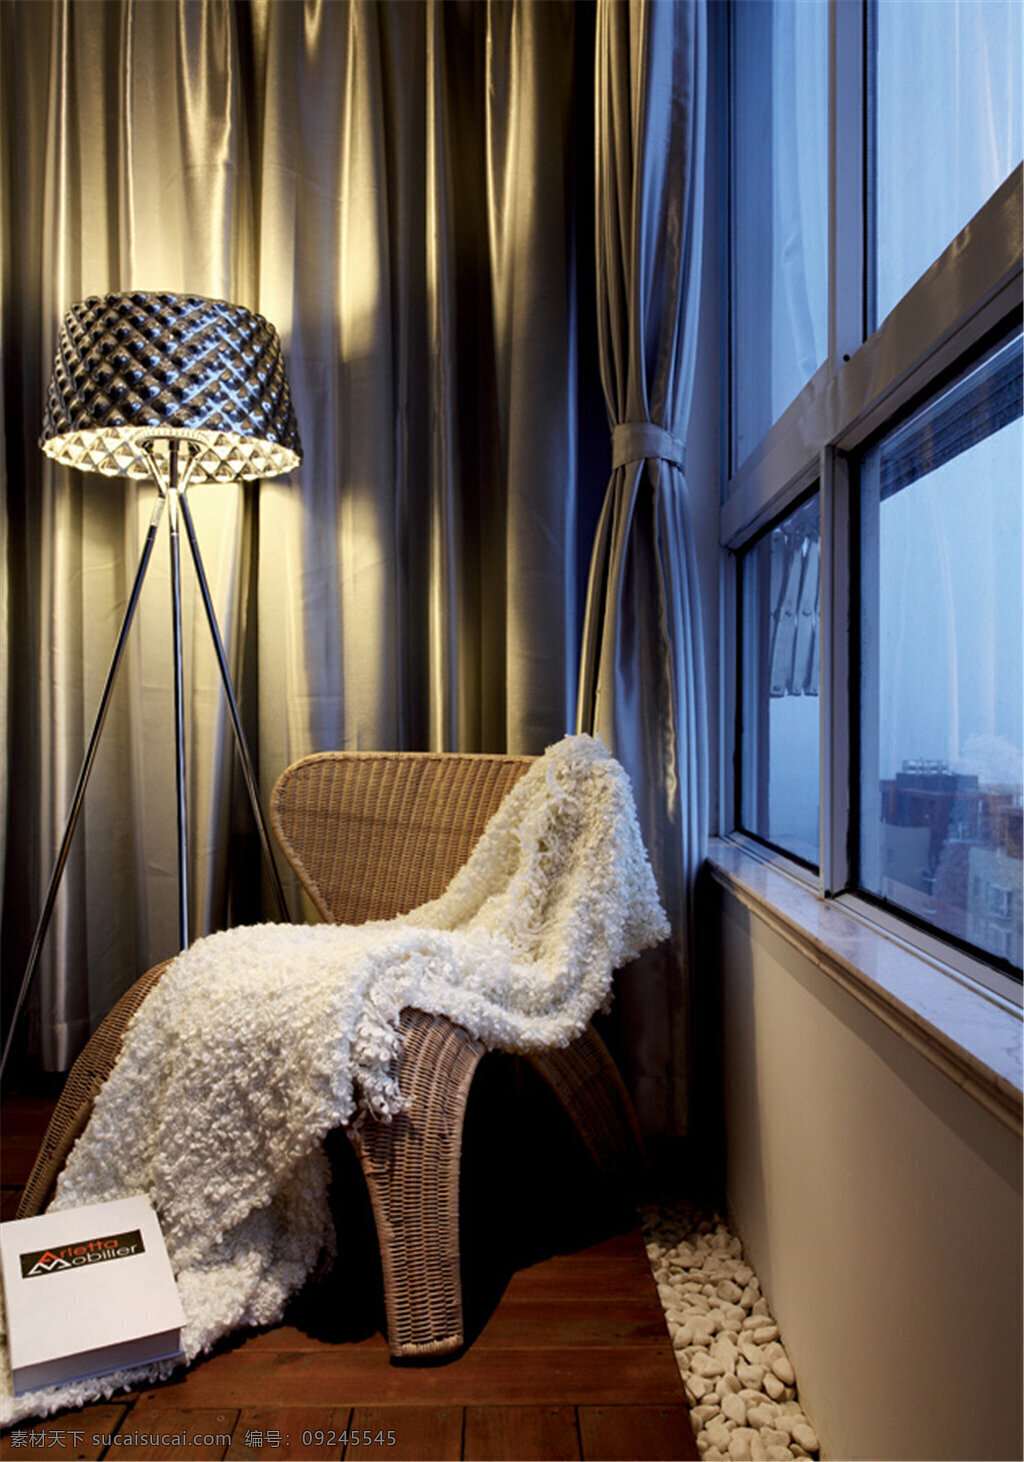 时尚 客厅 角落 设计图 家居生活 室内设计 装修 室内 家具 装修设计 环境设计 落地灯 椅子 窗户 木地板